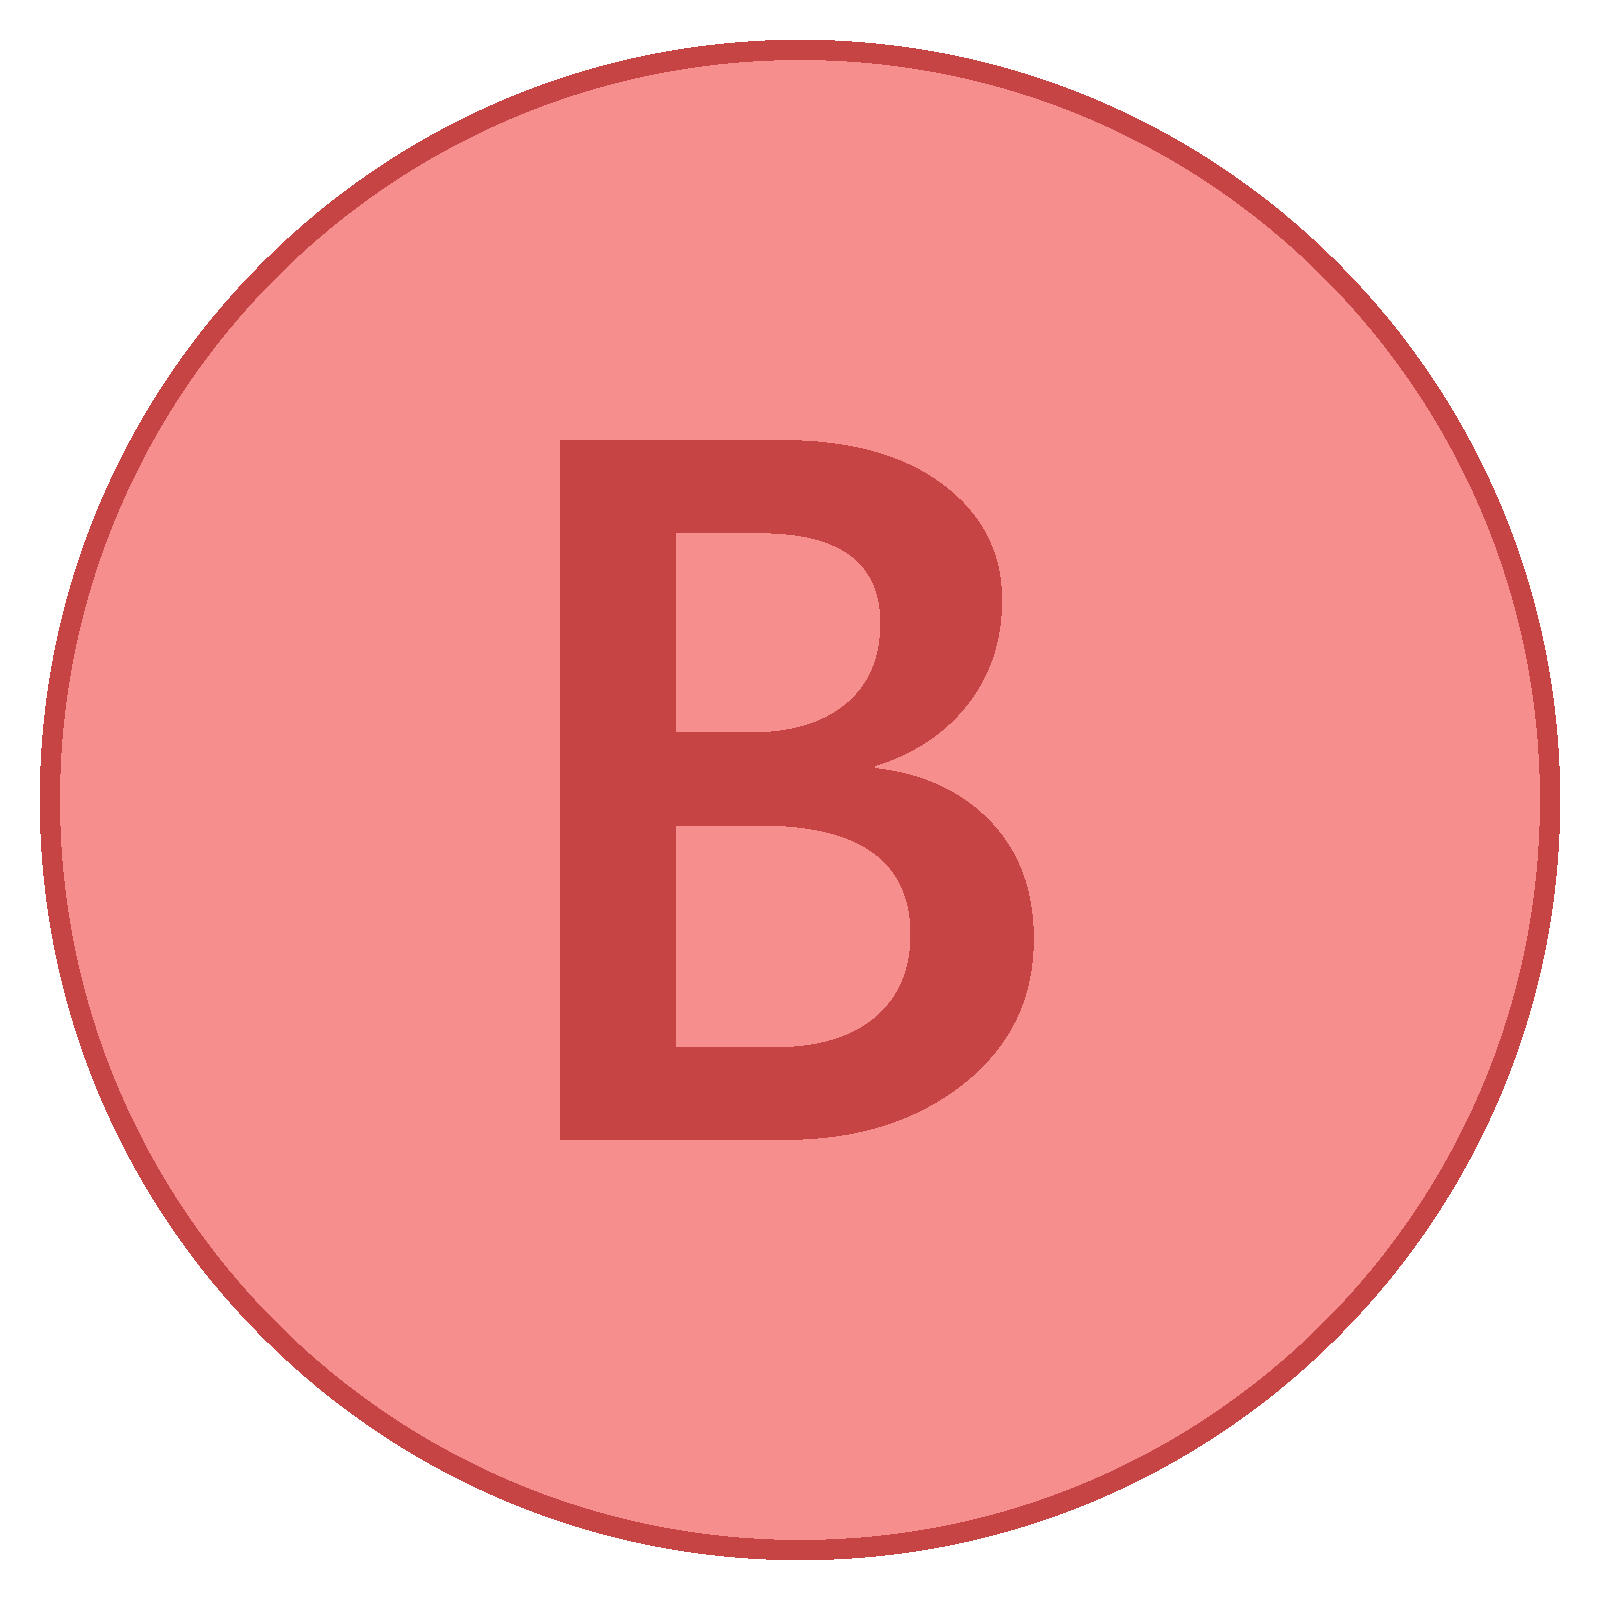 B in Circle Logo - Xbox B Icono - descarga gratuita, PNG y vector